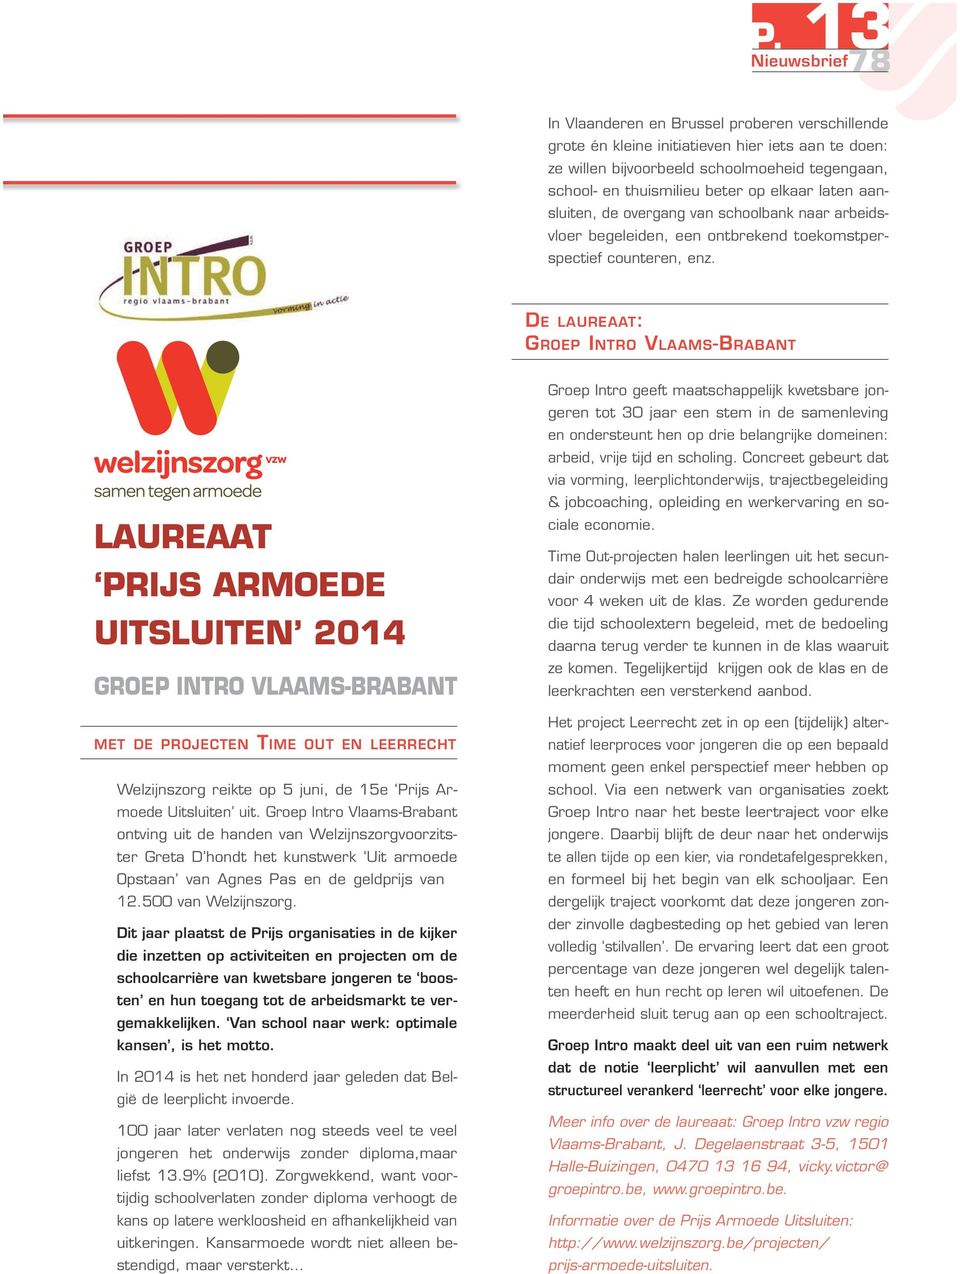 De laureaat: Groep Intro Vlaams-Brabant Laureaat Prijs Armoede Uitsluiten 2014 GROEP INTRO VLAAMS-BRABANT met de projecten Time out en leerrecht Welzijnszorg reikte op 5 juni, de 15e Prijs Armoede